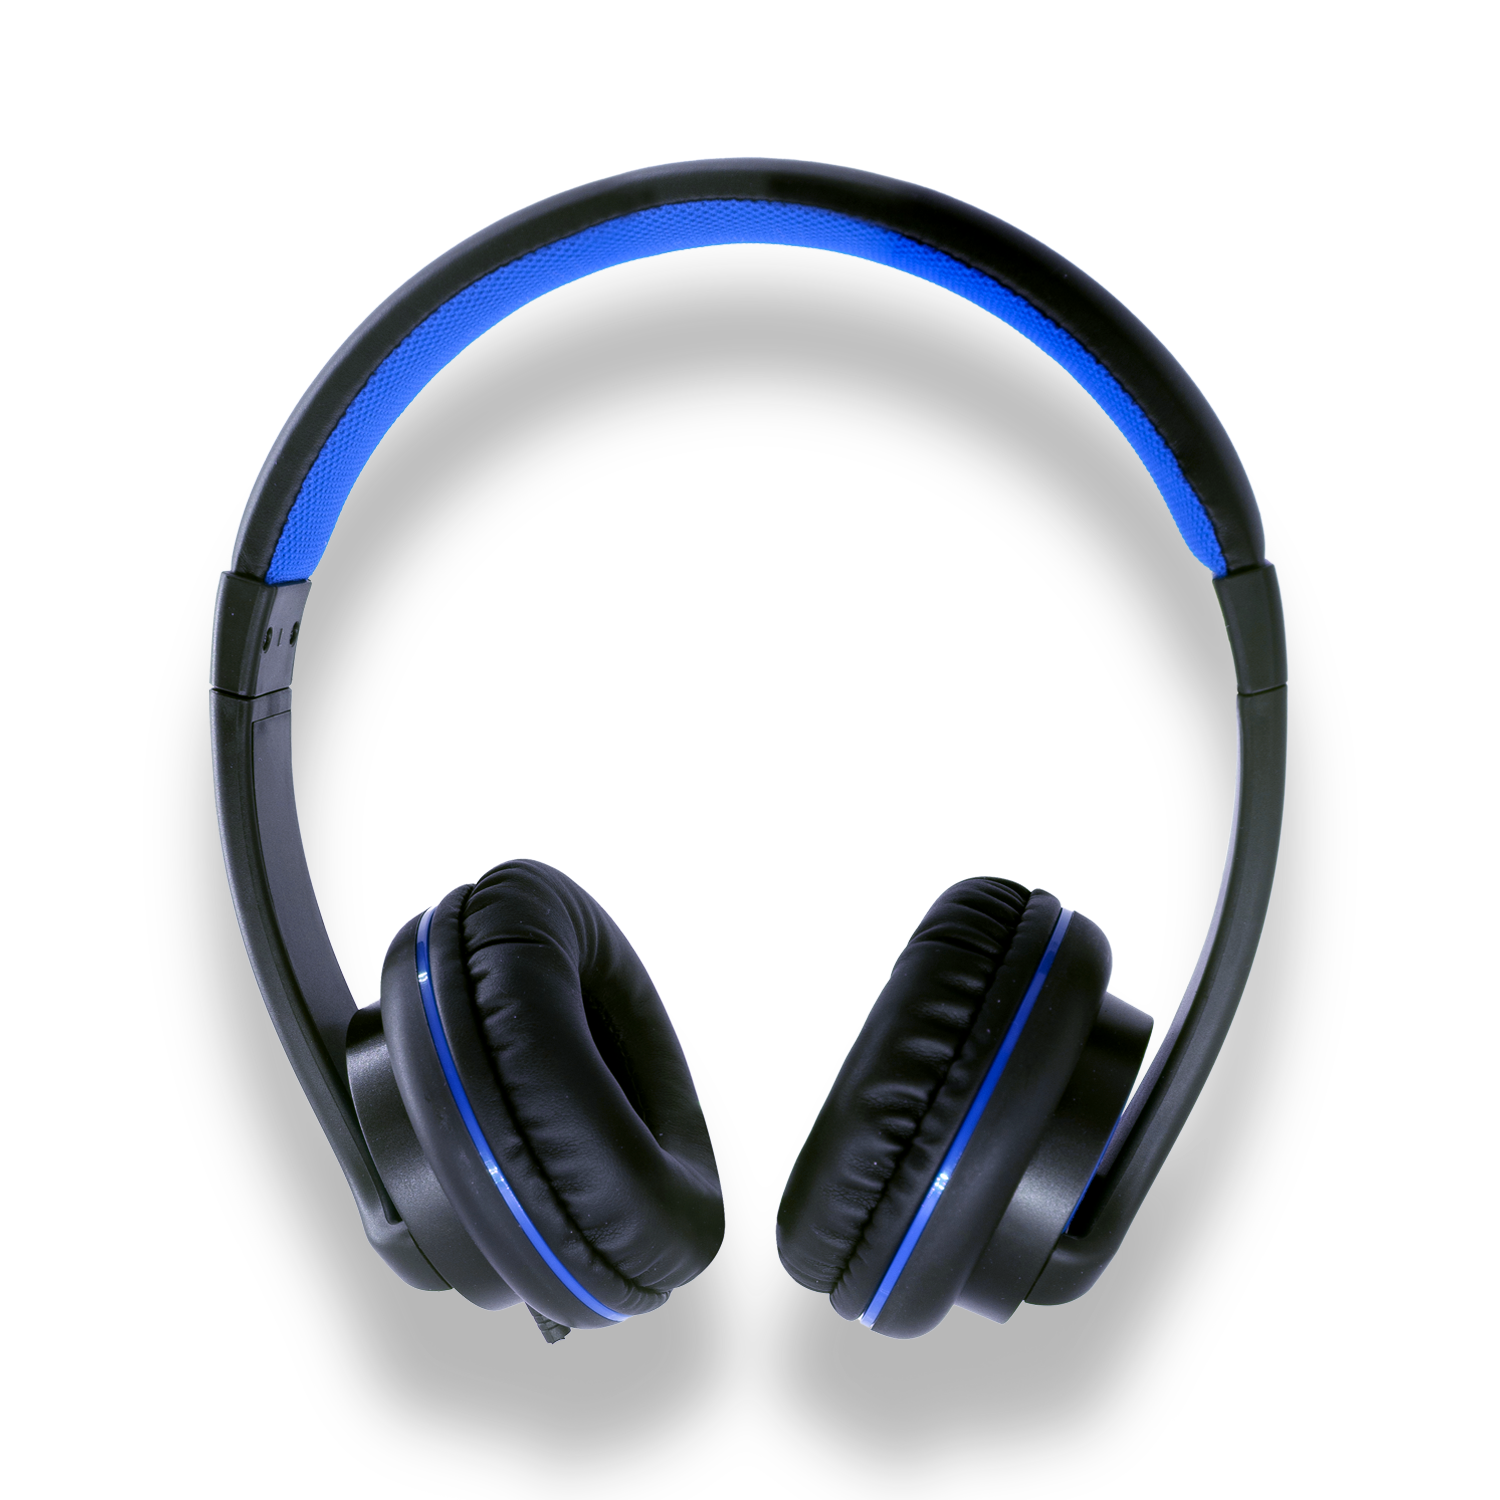 Sades T-Power SA-701 Gaming Headphones with Mic